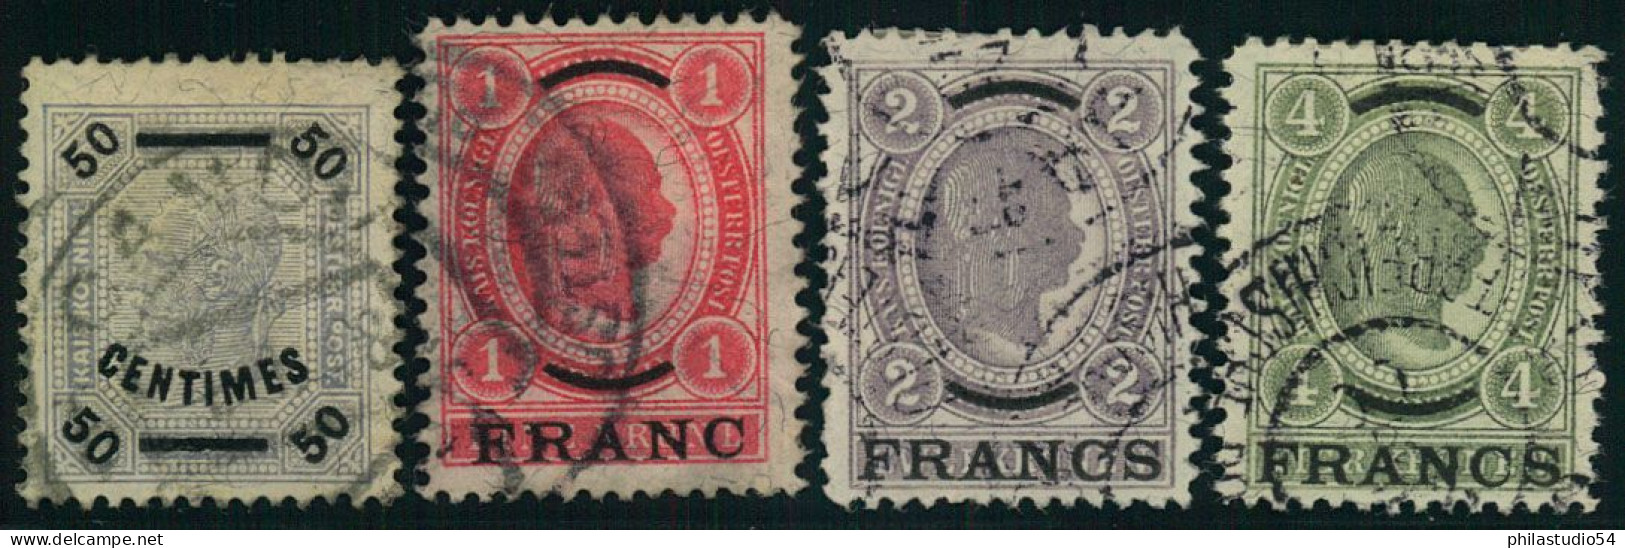 1904, ÖSTERREICHISCHE POST AUF KRETA:  Die Vier Höchstwerte 50 Cent Bis 4 Francs Gestempelt. (ME 1.200,-) - Creta